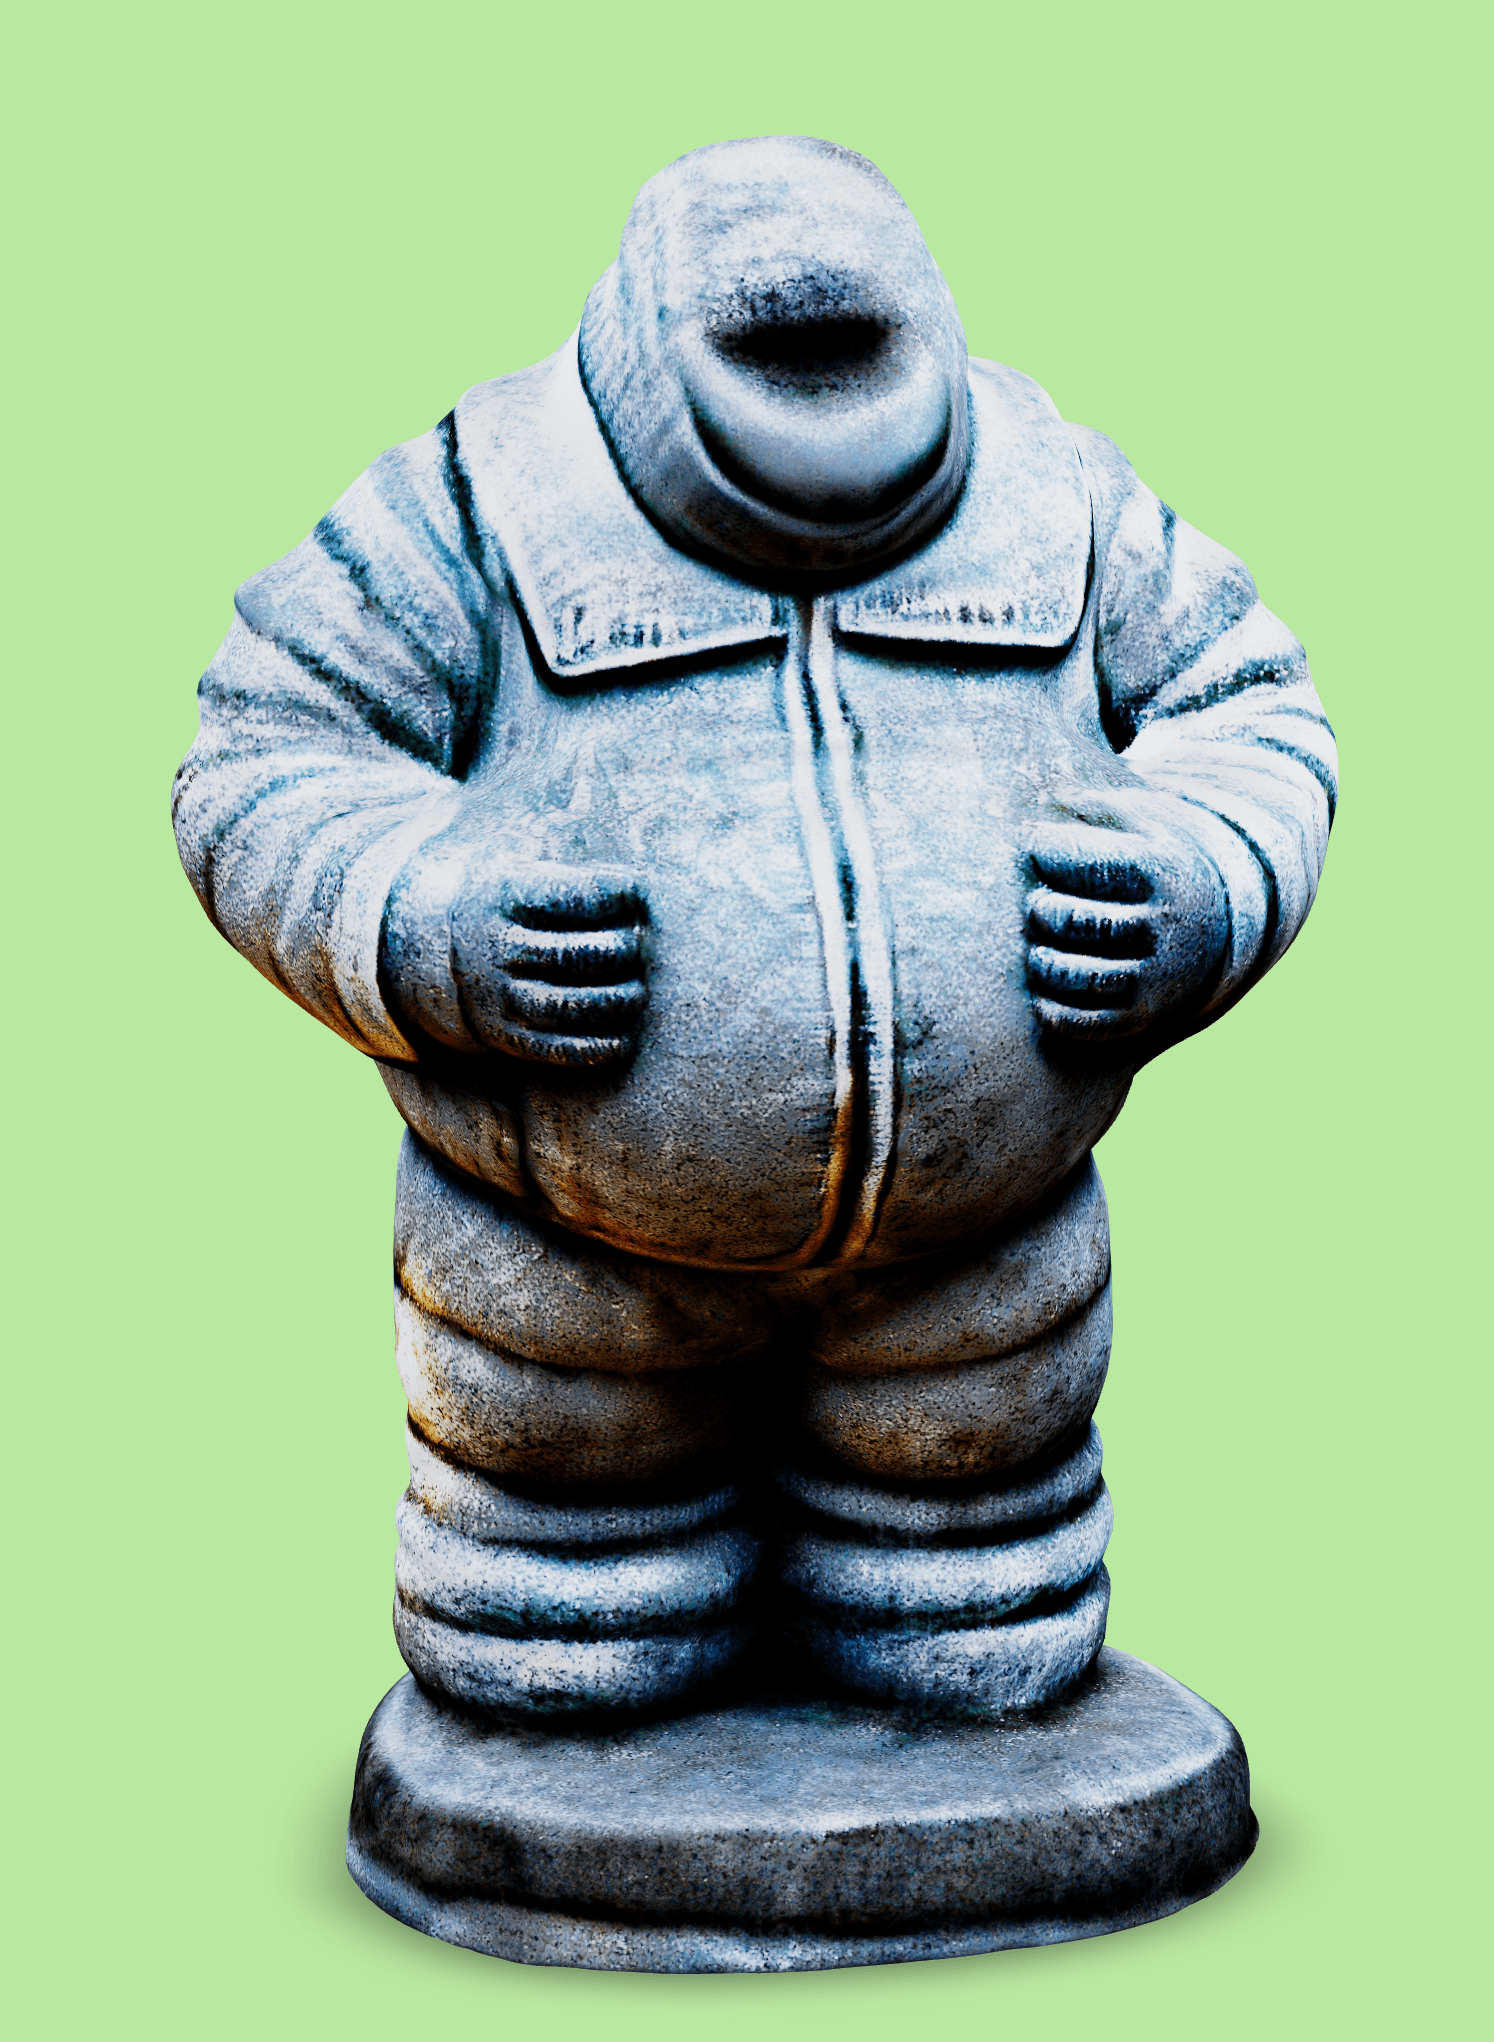 Oversize Michelin Man.glb 3d model